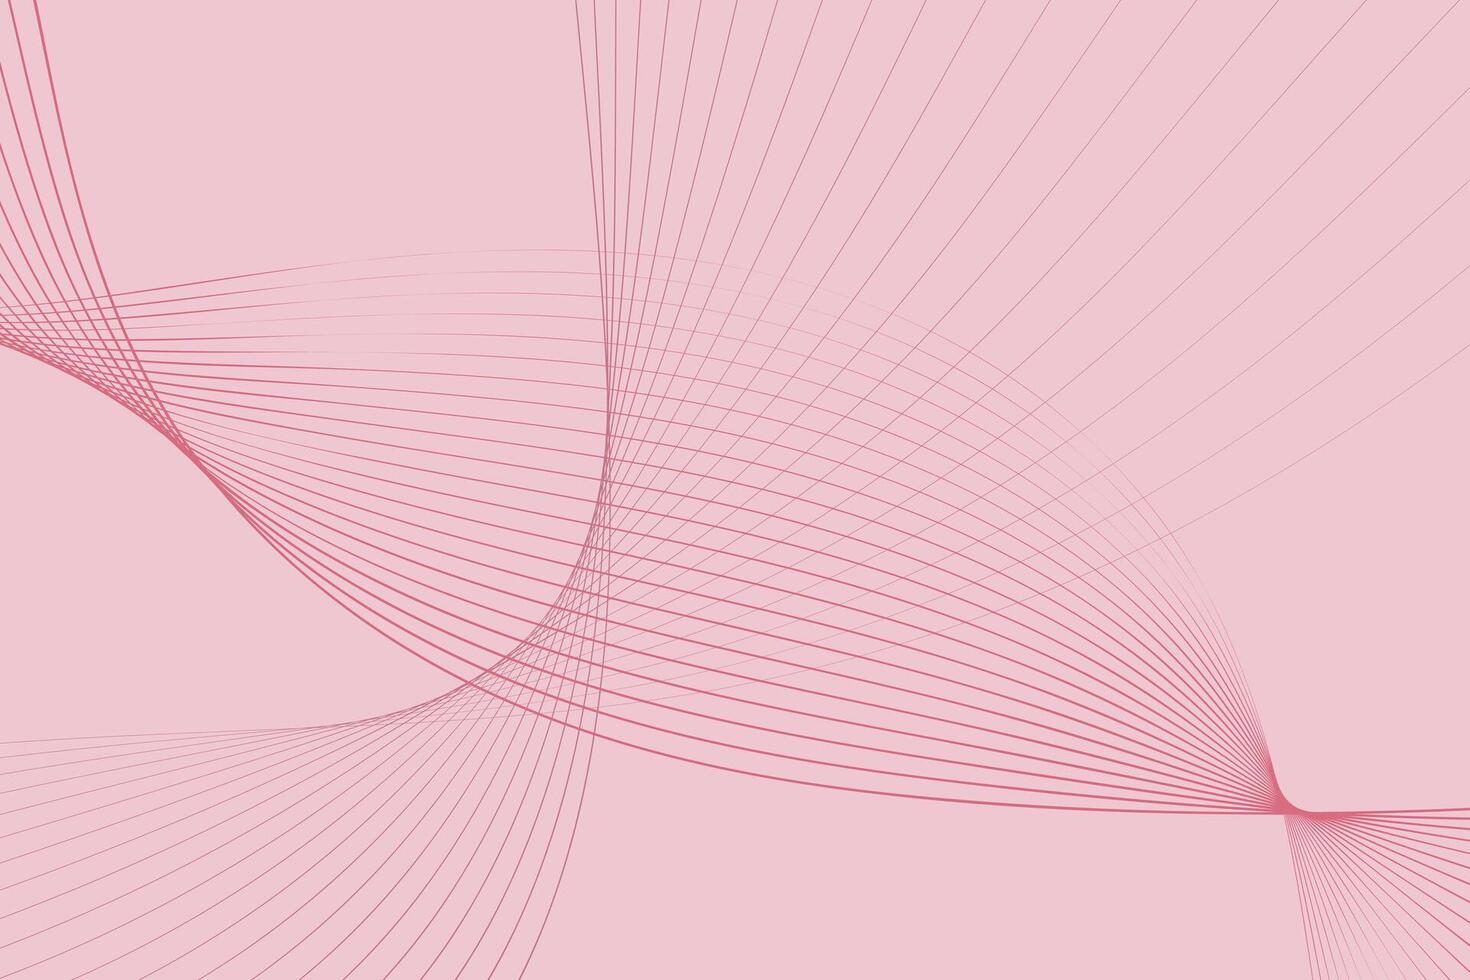 en vibrerande rosa bakgrund terar invecklad rader och kurvor skapar en visuellt dynamisk och fängslande sammansättning. de rader korsas och strömma tvärs över de bild, tillsats djup och rörelse vektor